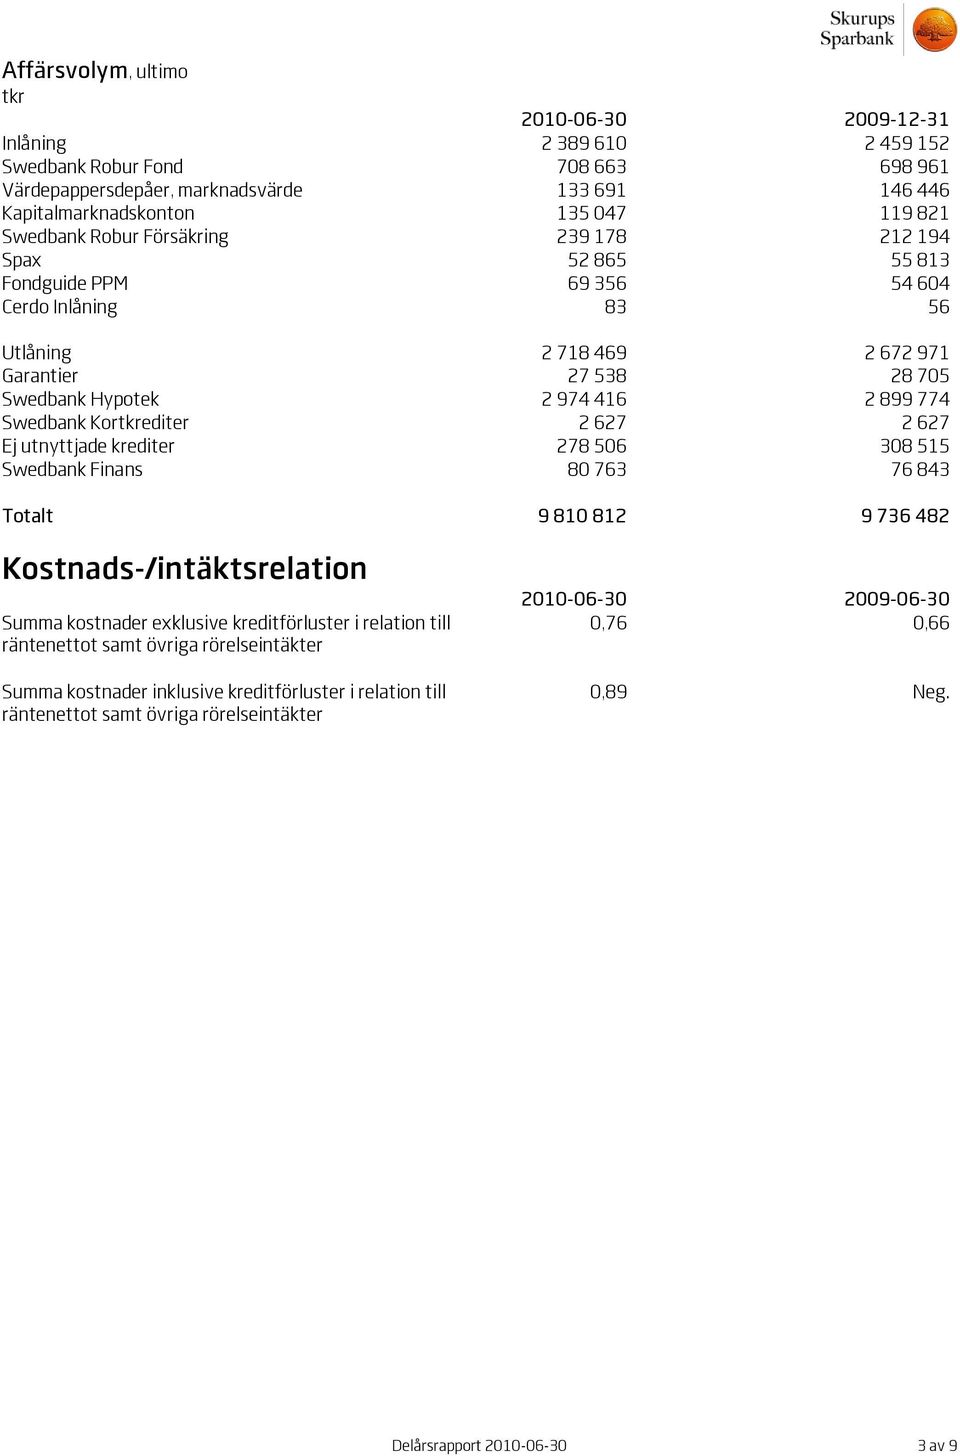 Swedbank Kortkrediter 2 627 2 627 Ej utnyttjade krediter 278 506 308 515 Swedbank Finans 80 763 76 843 Totalt 9 810 812 9 736 482 Kostnads-/intäktsrelation Summa kostnader exklusive kreditförluster i